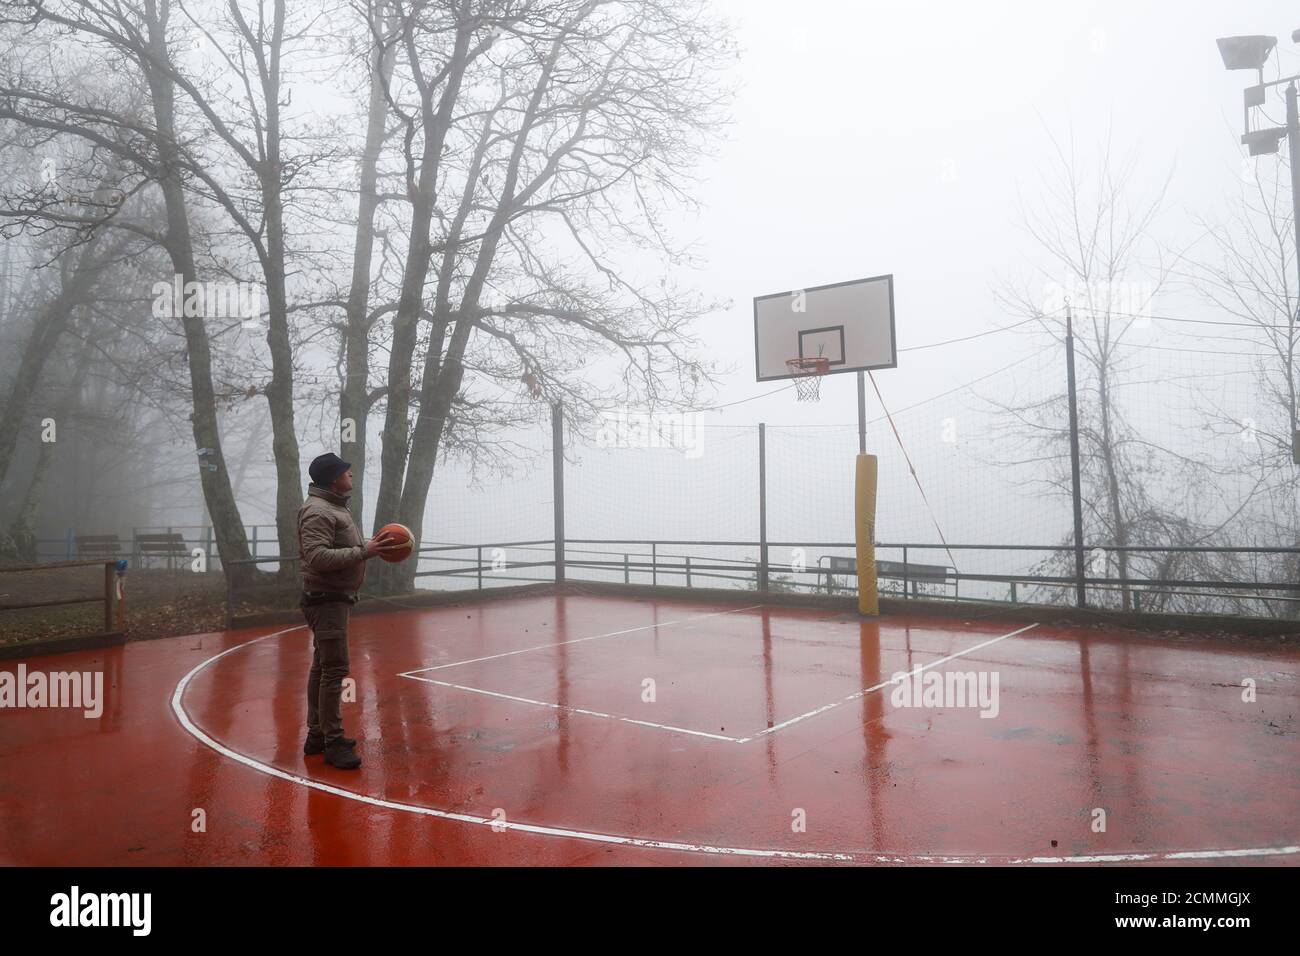 Michele Rotella, l'amie d'enfance de Kobe Bryant, se promène sur le terrain de basket-ball où Kobe Bryant jouait alors qu'il était jeune, à Cireglio, en Italie, le 27 janvier 2020. REUTERS/Yara Nardi Banque D'Images